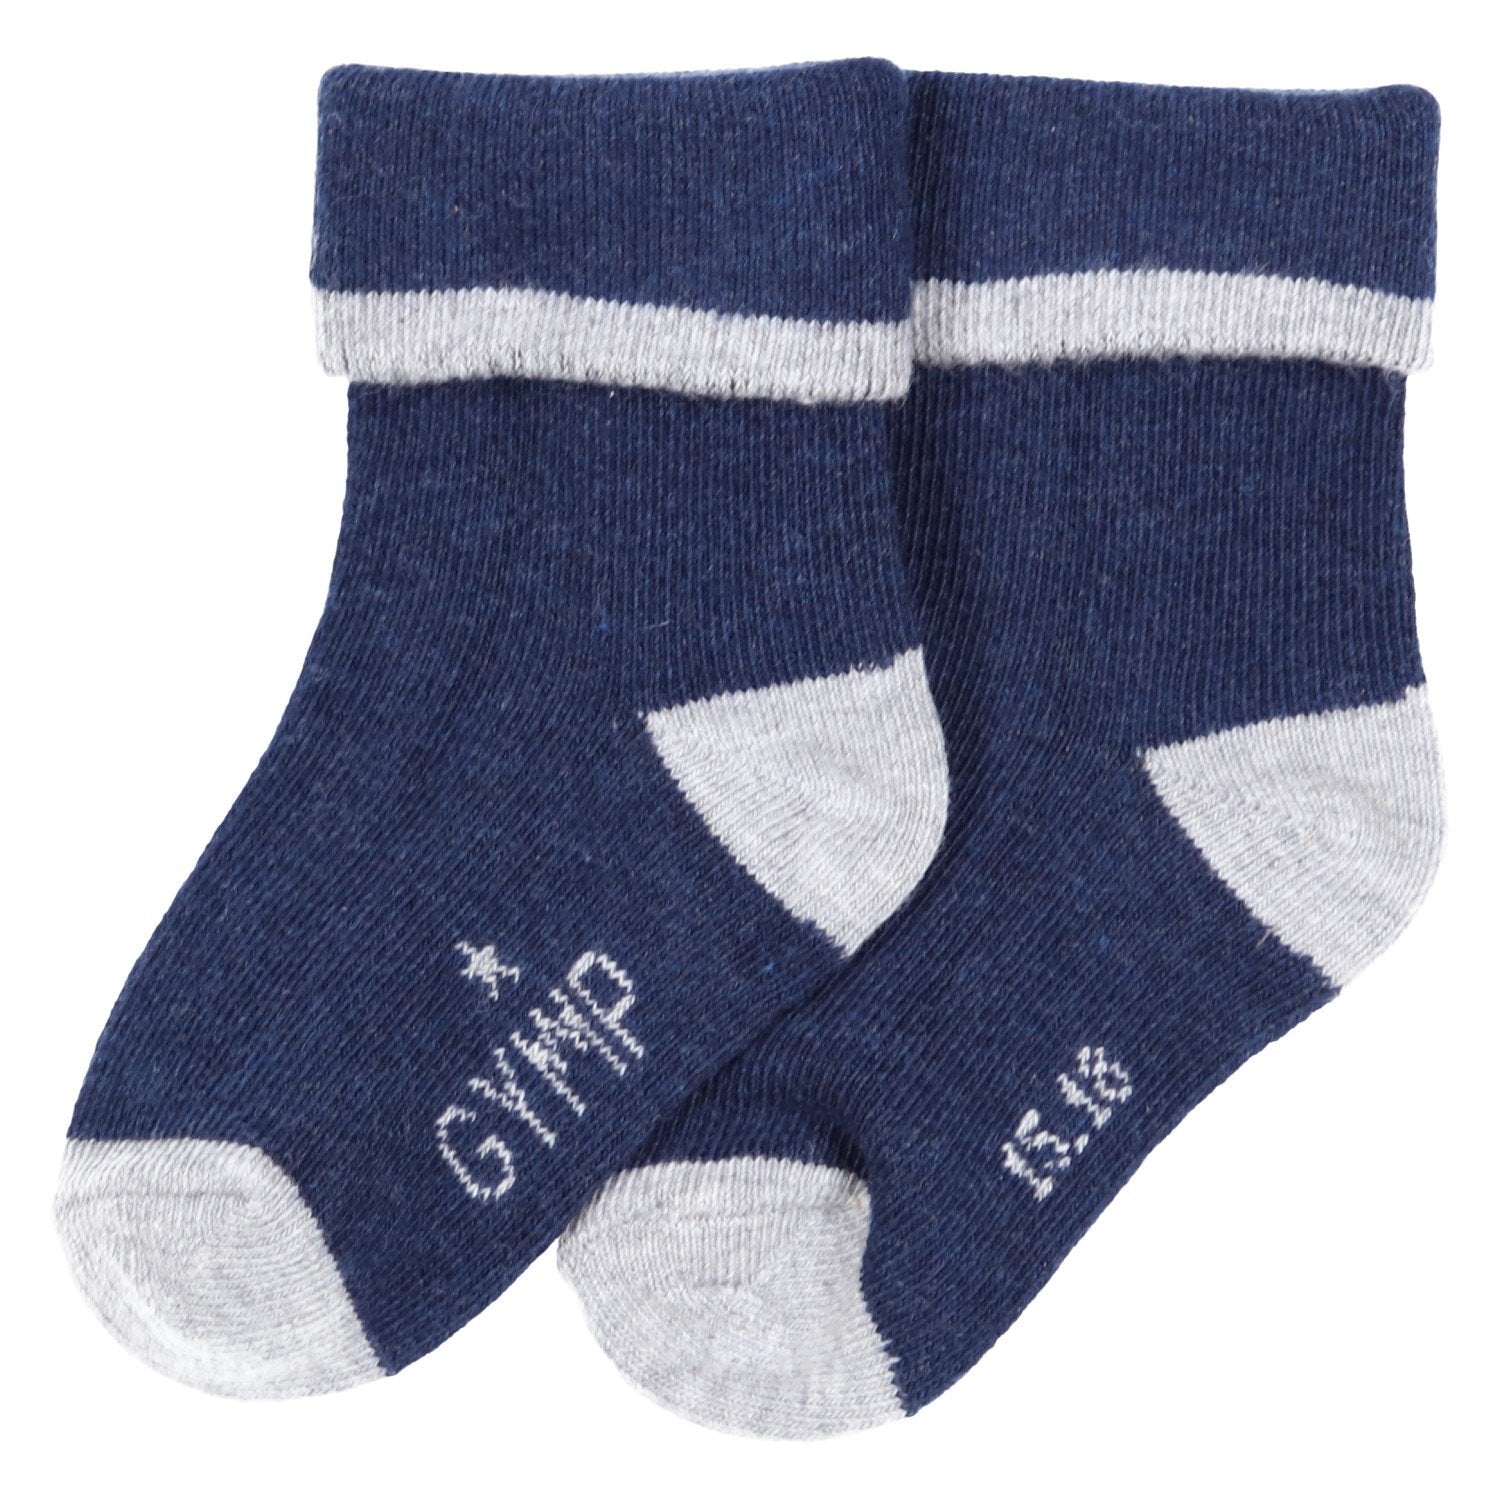 Baby jongens SOKKEN - boys socks - Preminim van GYMP in de kleur BLAUW/GRIJS in maat 19, 22.